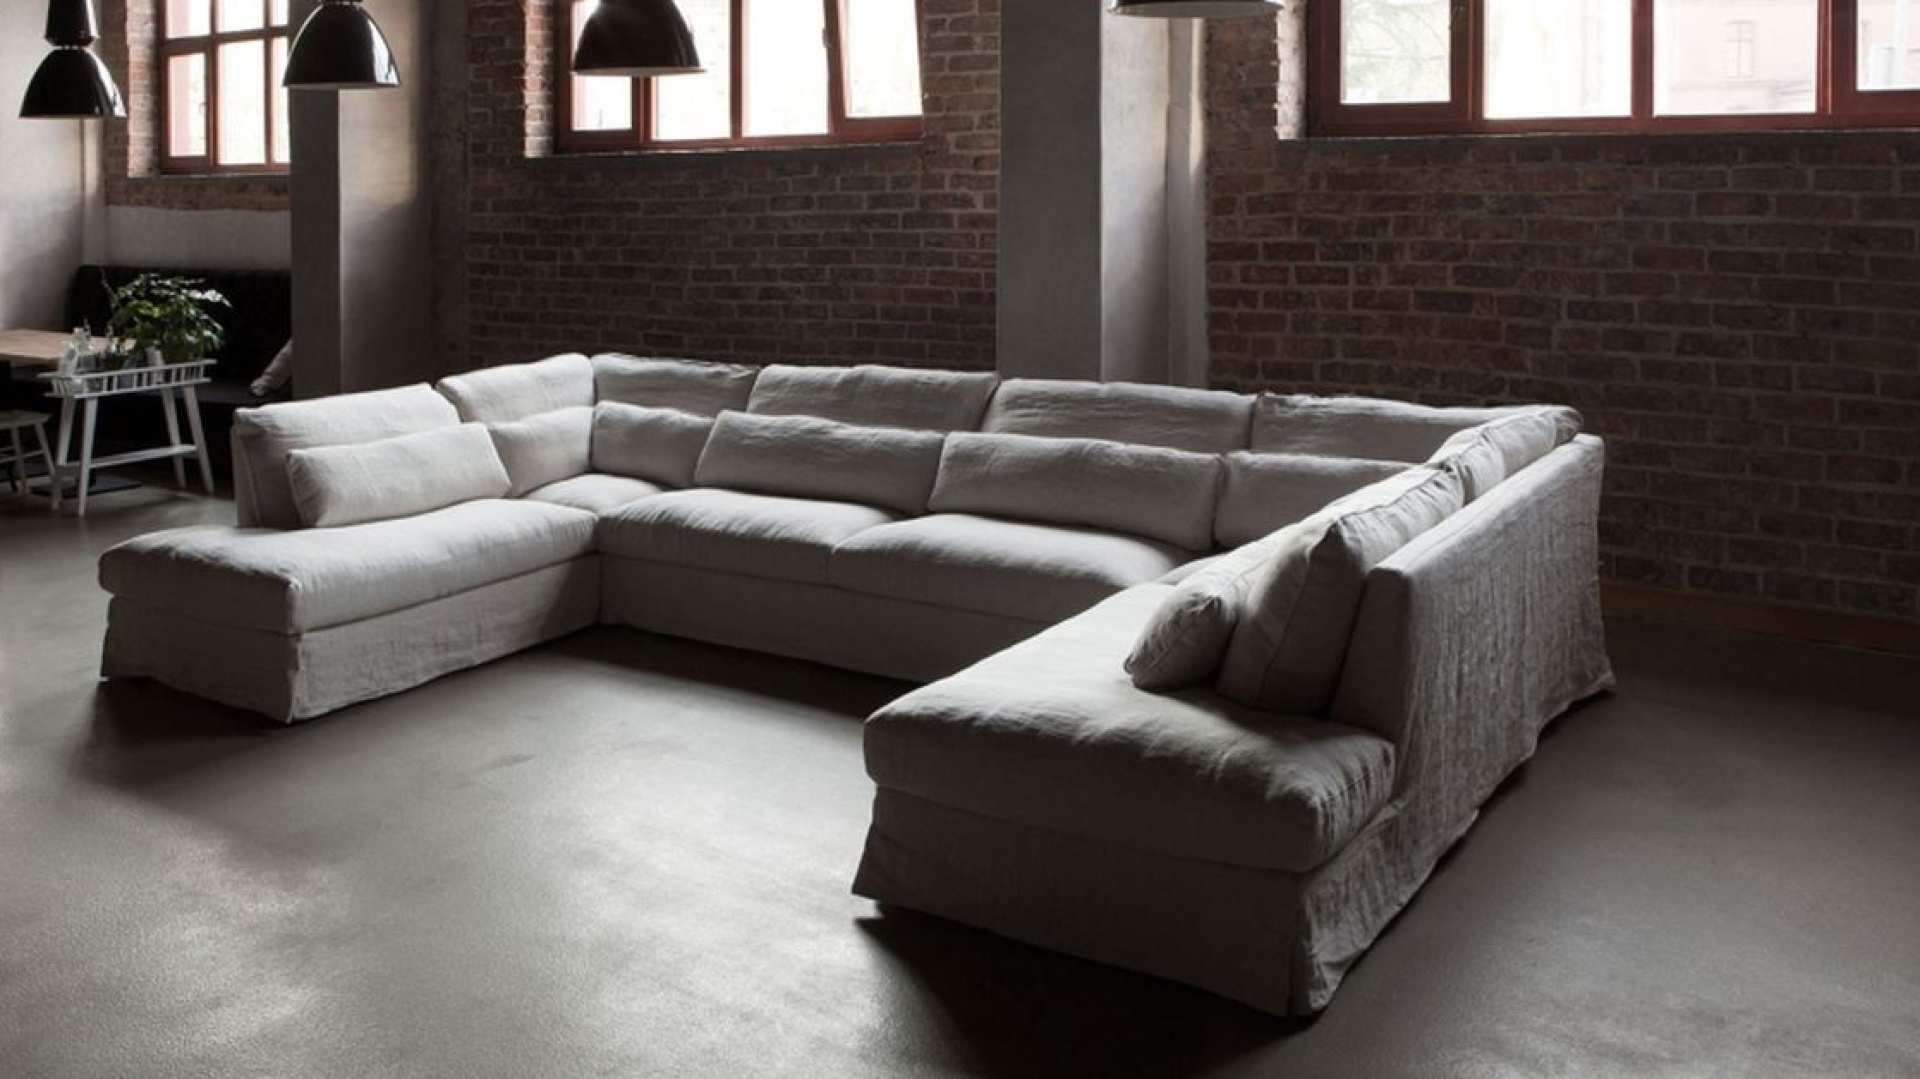 Letnie leniuchowanie: sofa w lnianej tkaninie